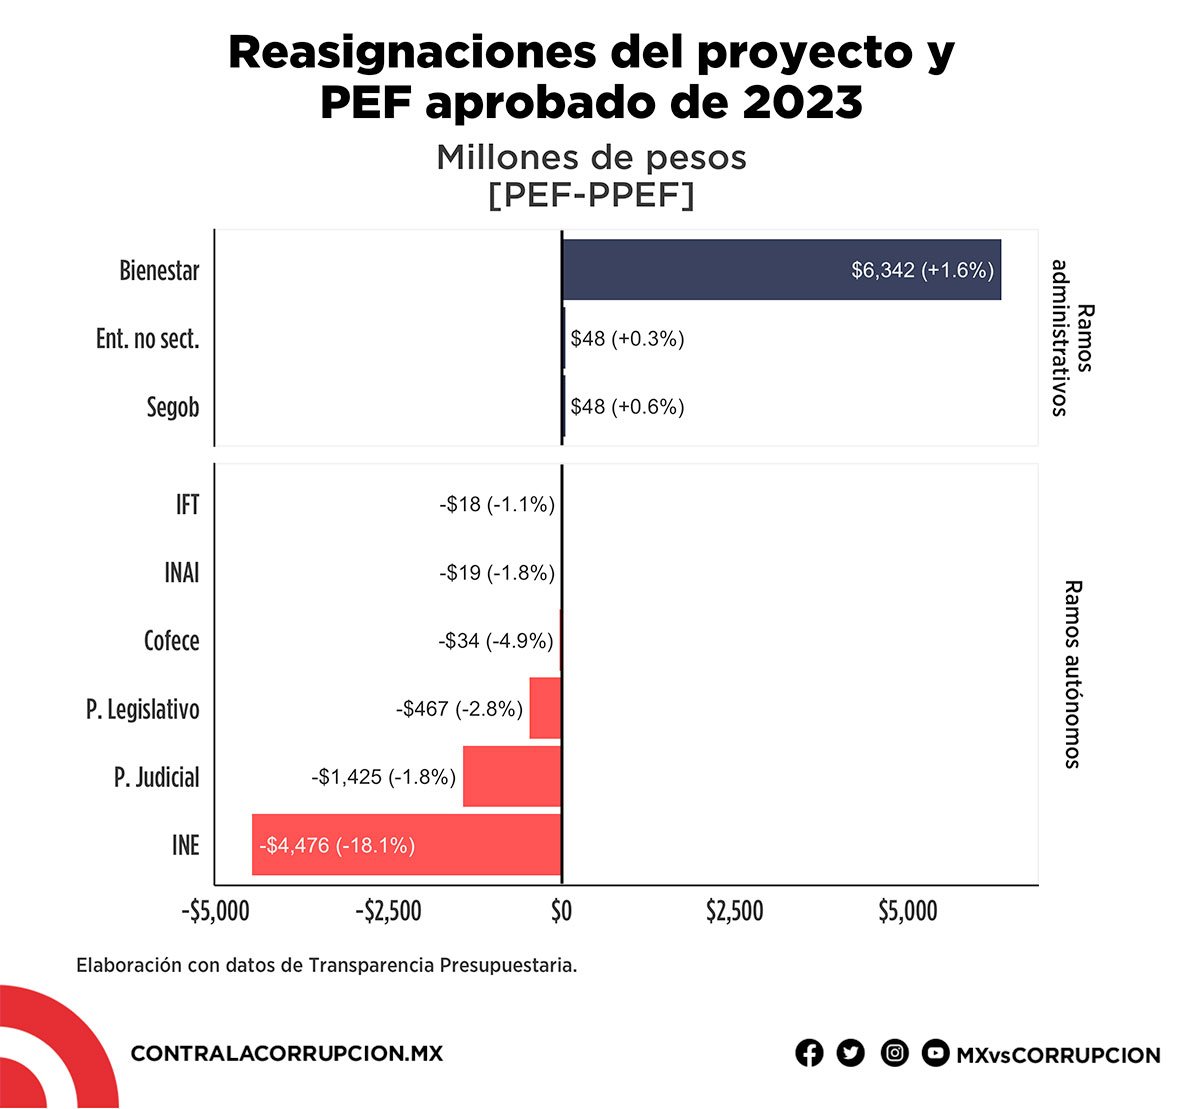 Reasignaciones del proyecto y PEF aprobado de 2023